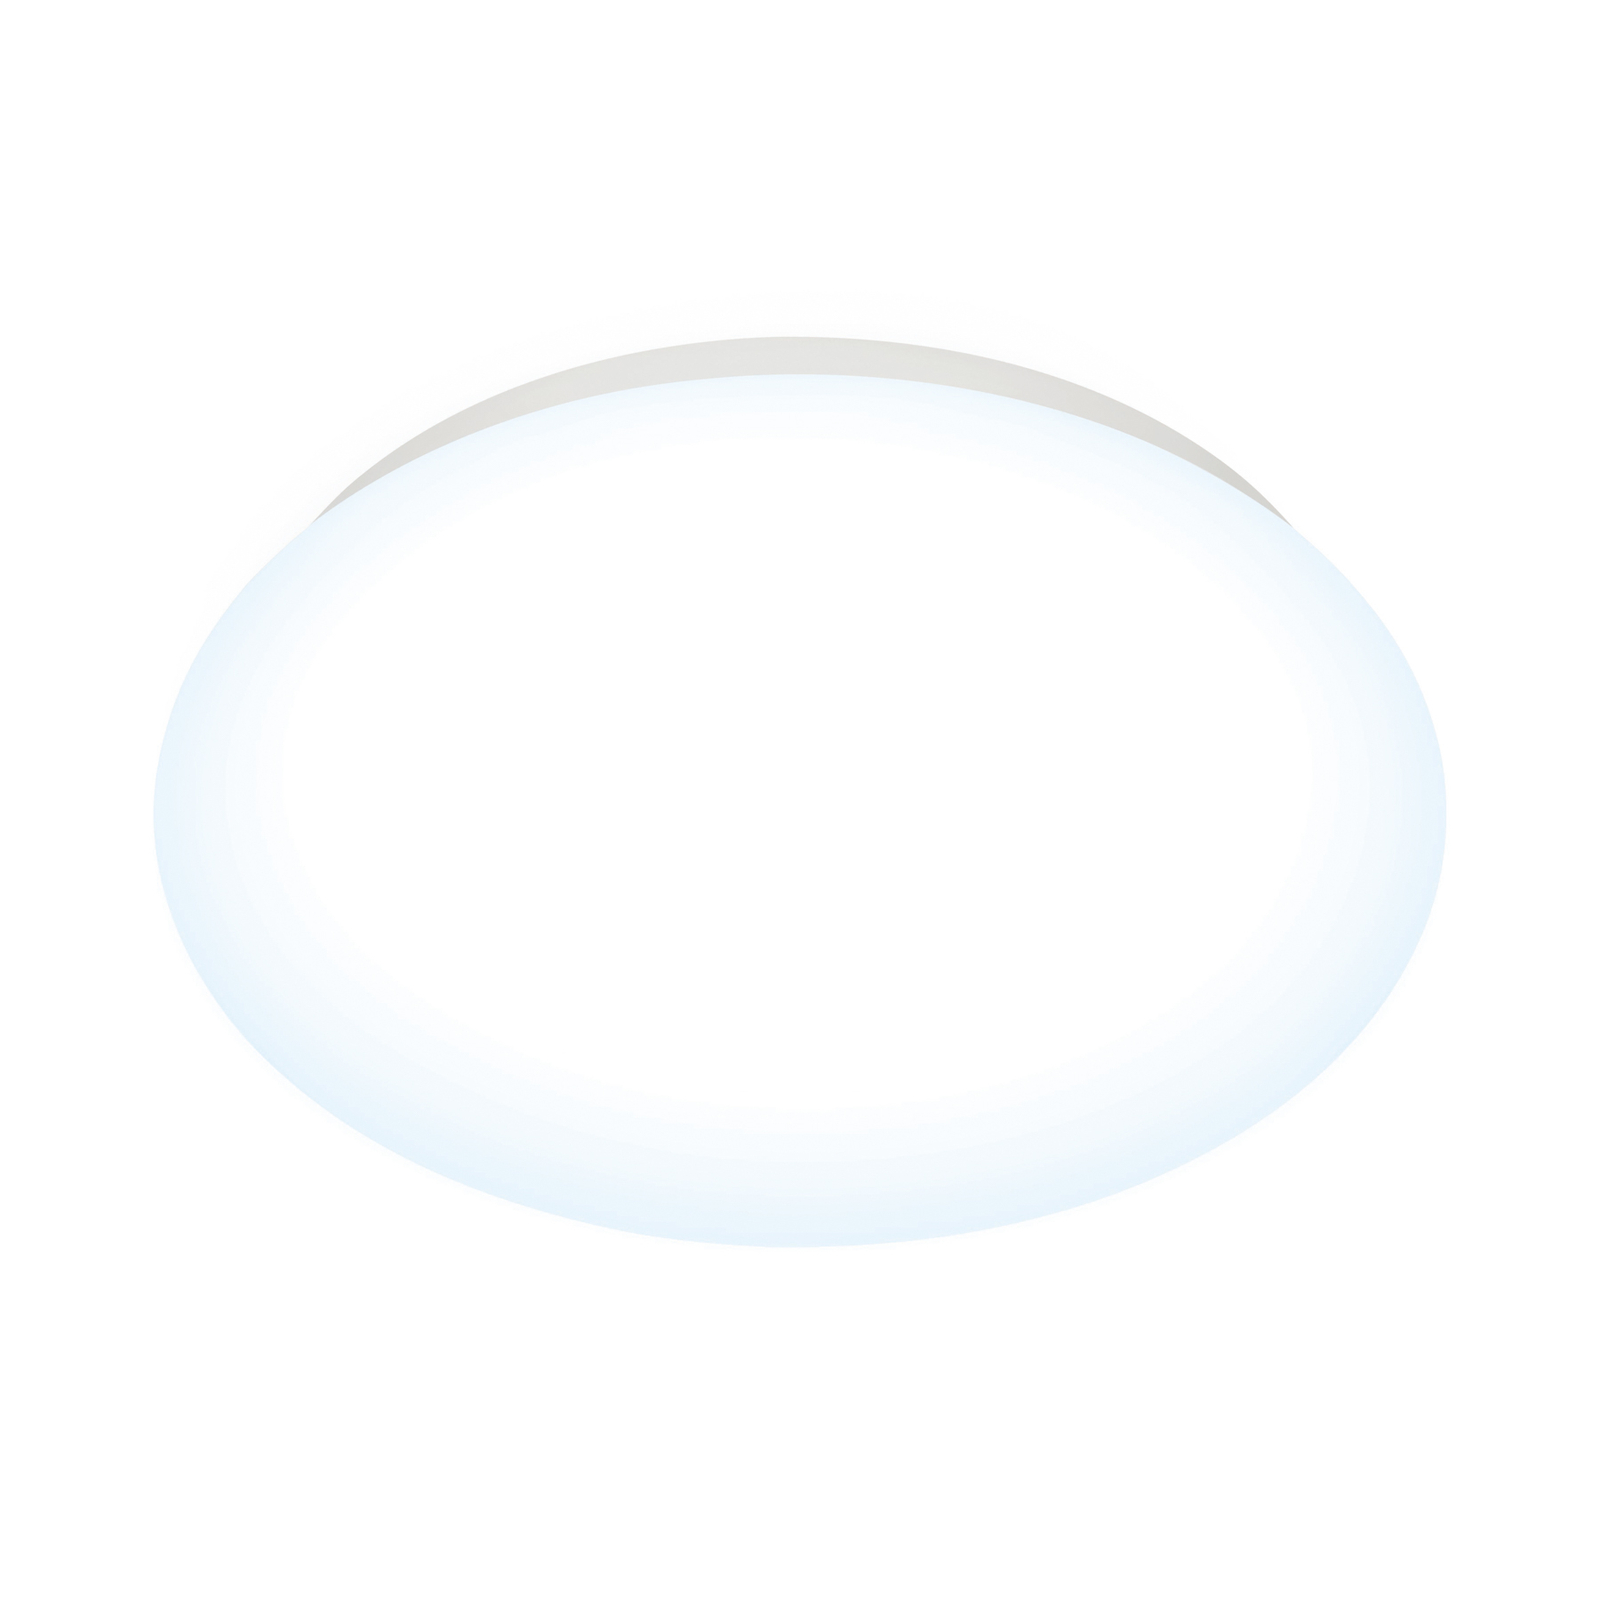 WiZ Adria stropné LED svietidlo, 17 W, uni biela